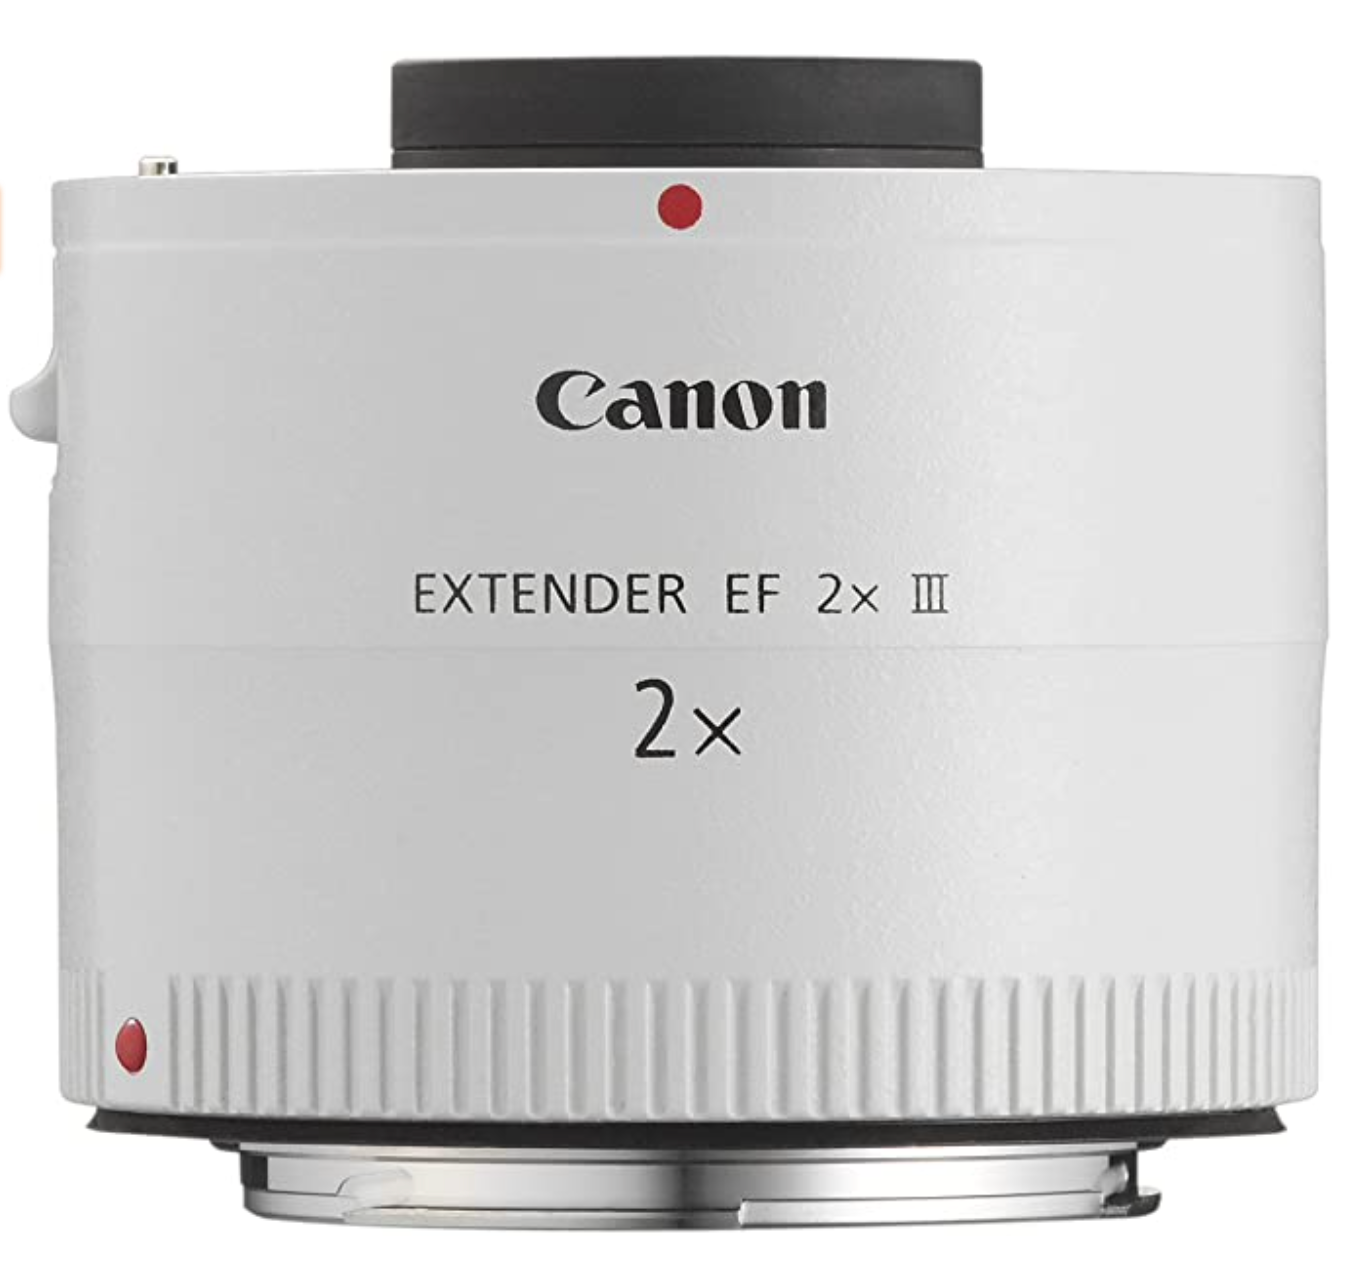 Extender 2x- EF2X III